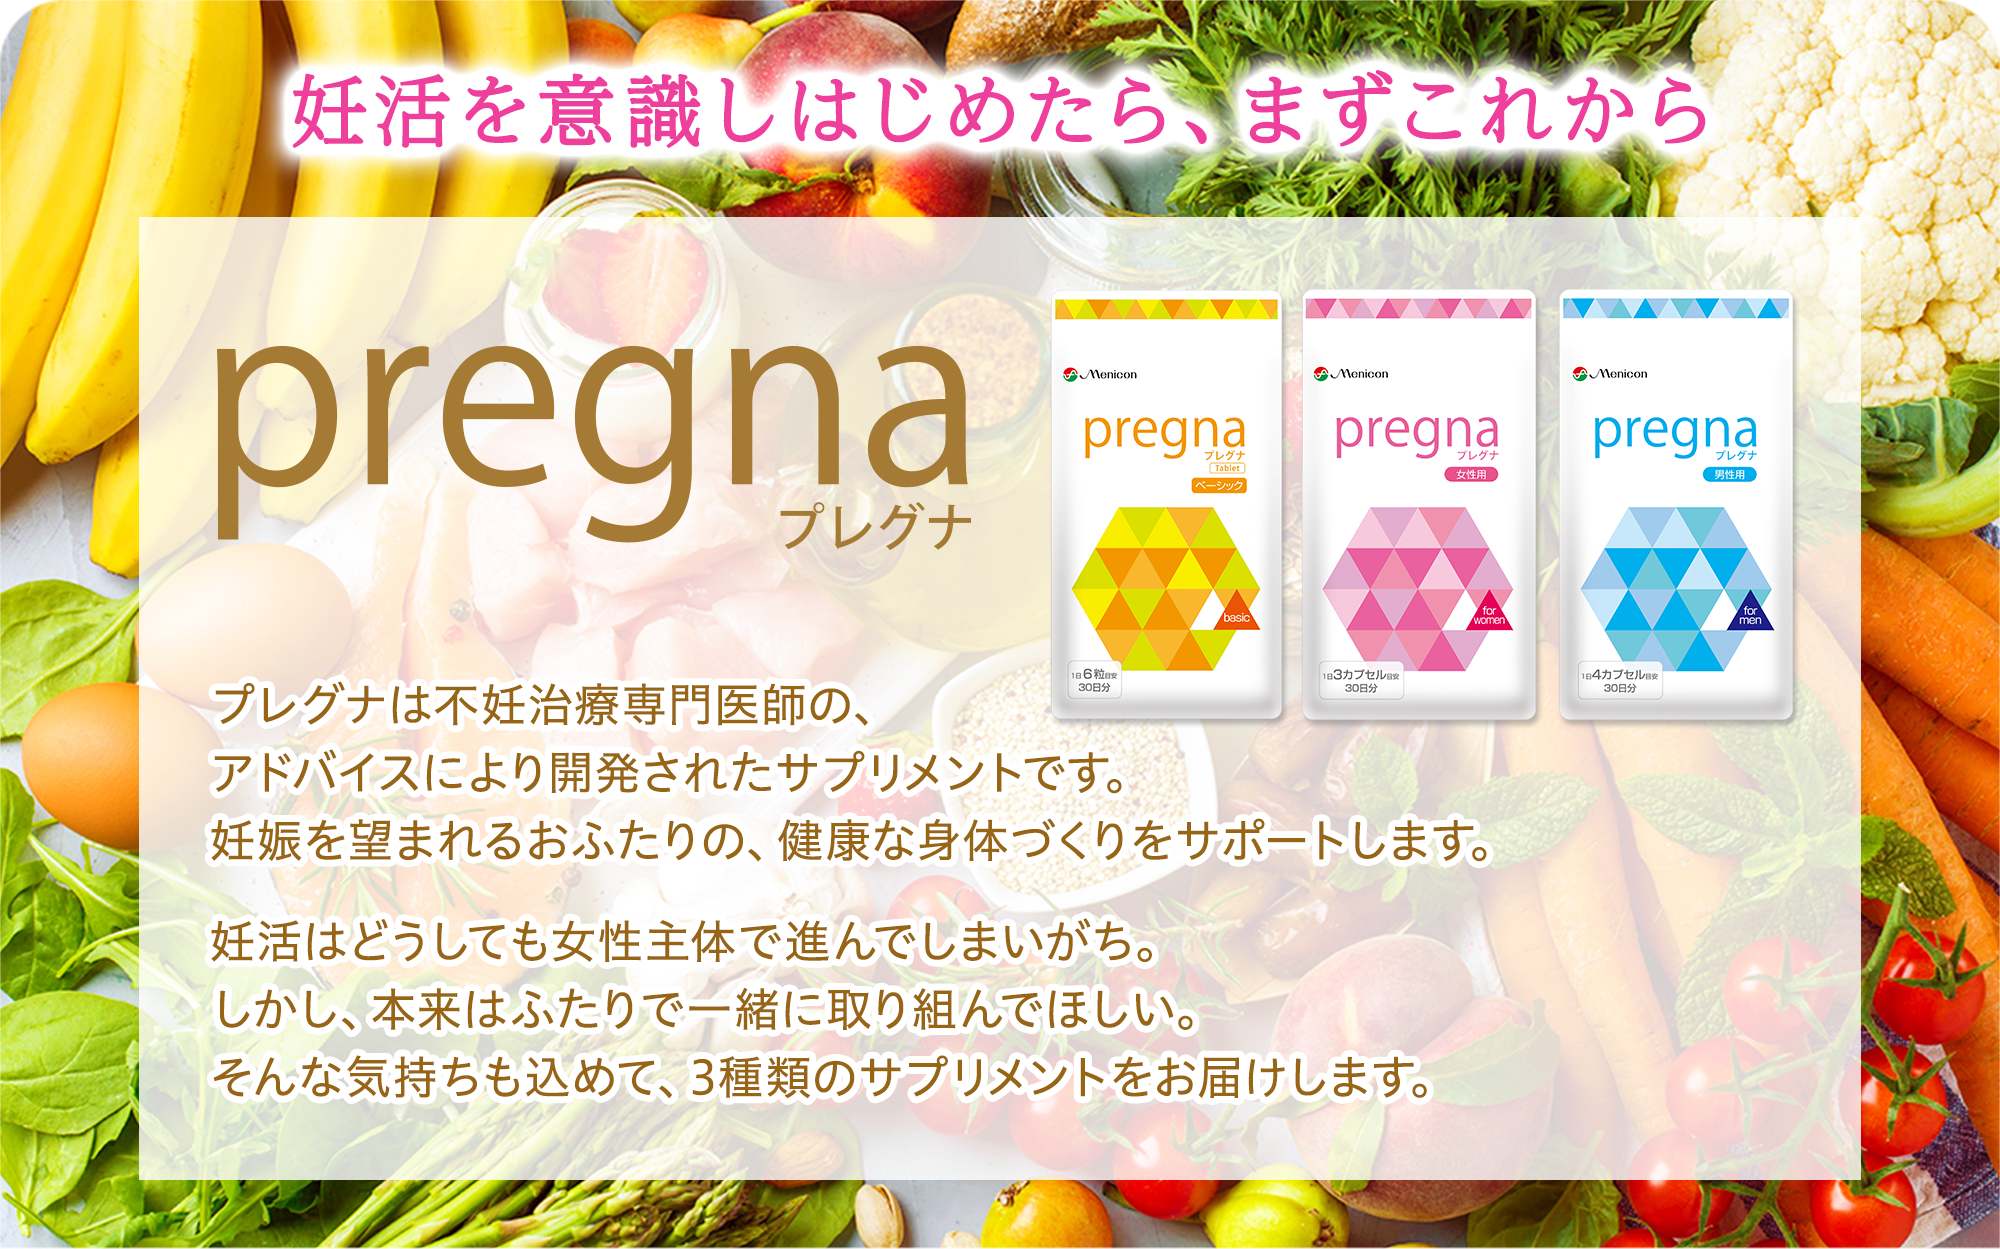 妊活を意識しはじめたら、まずこれから。プレグナシリーズ